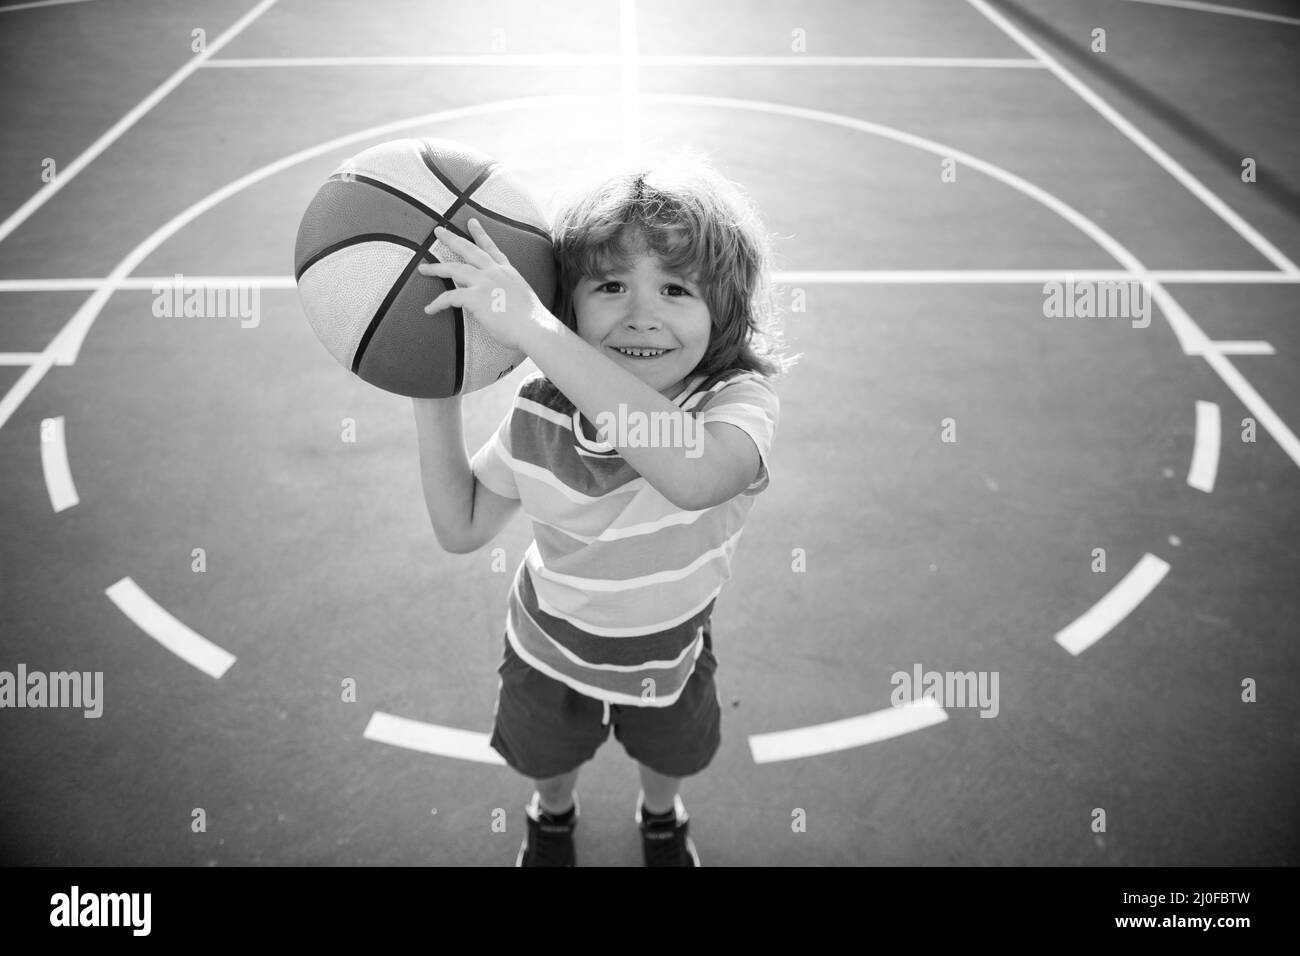 Enfant petit garçon jouant au basket-ball avec basket-ball. Banque D'Images